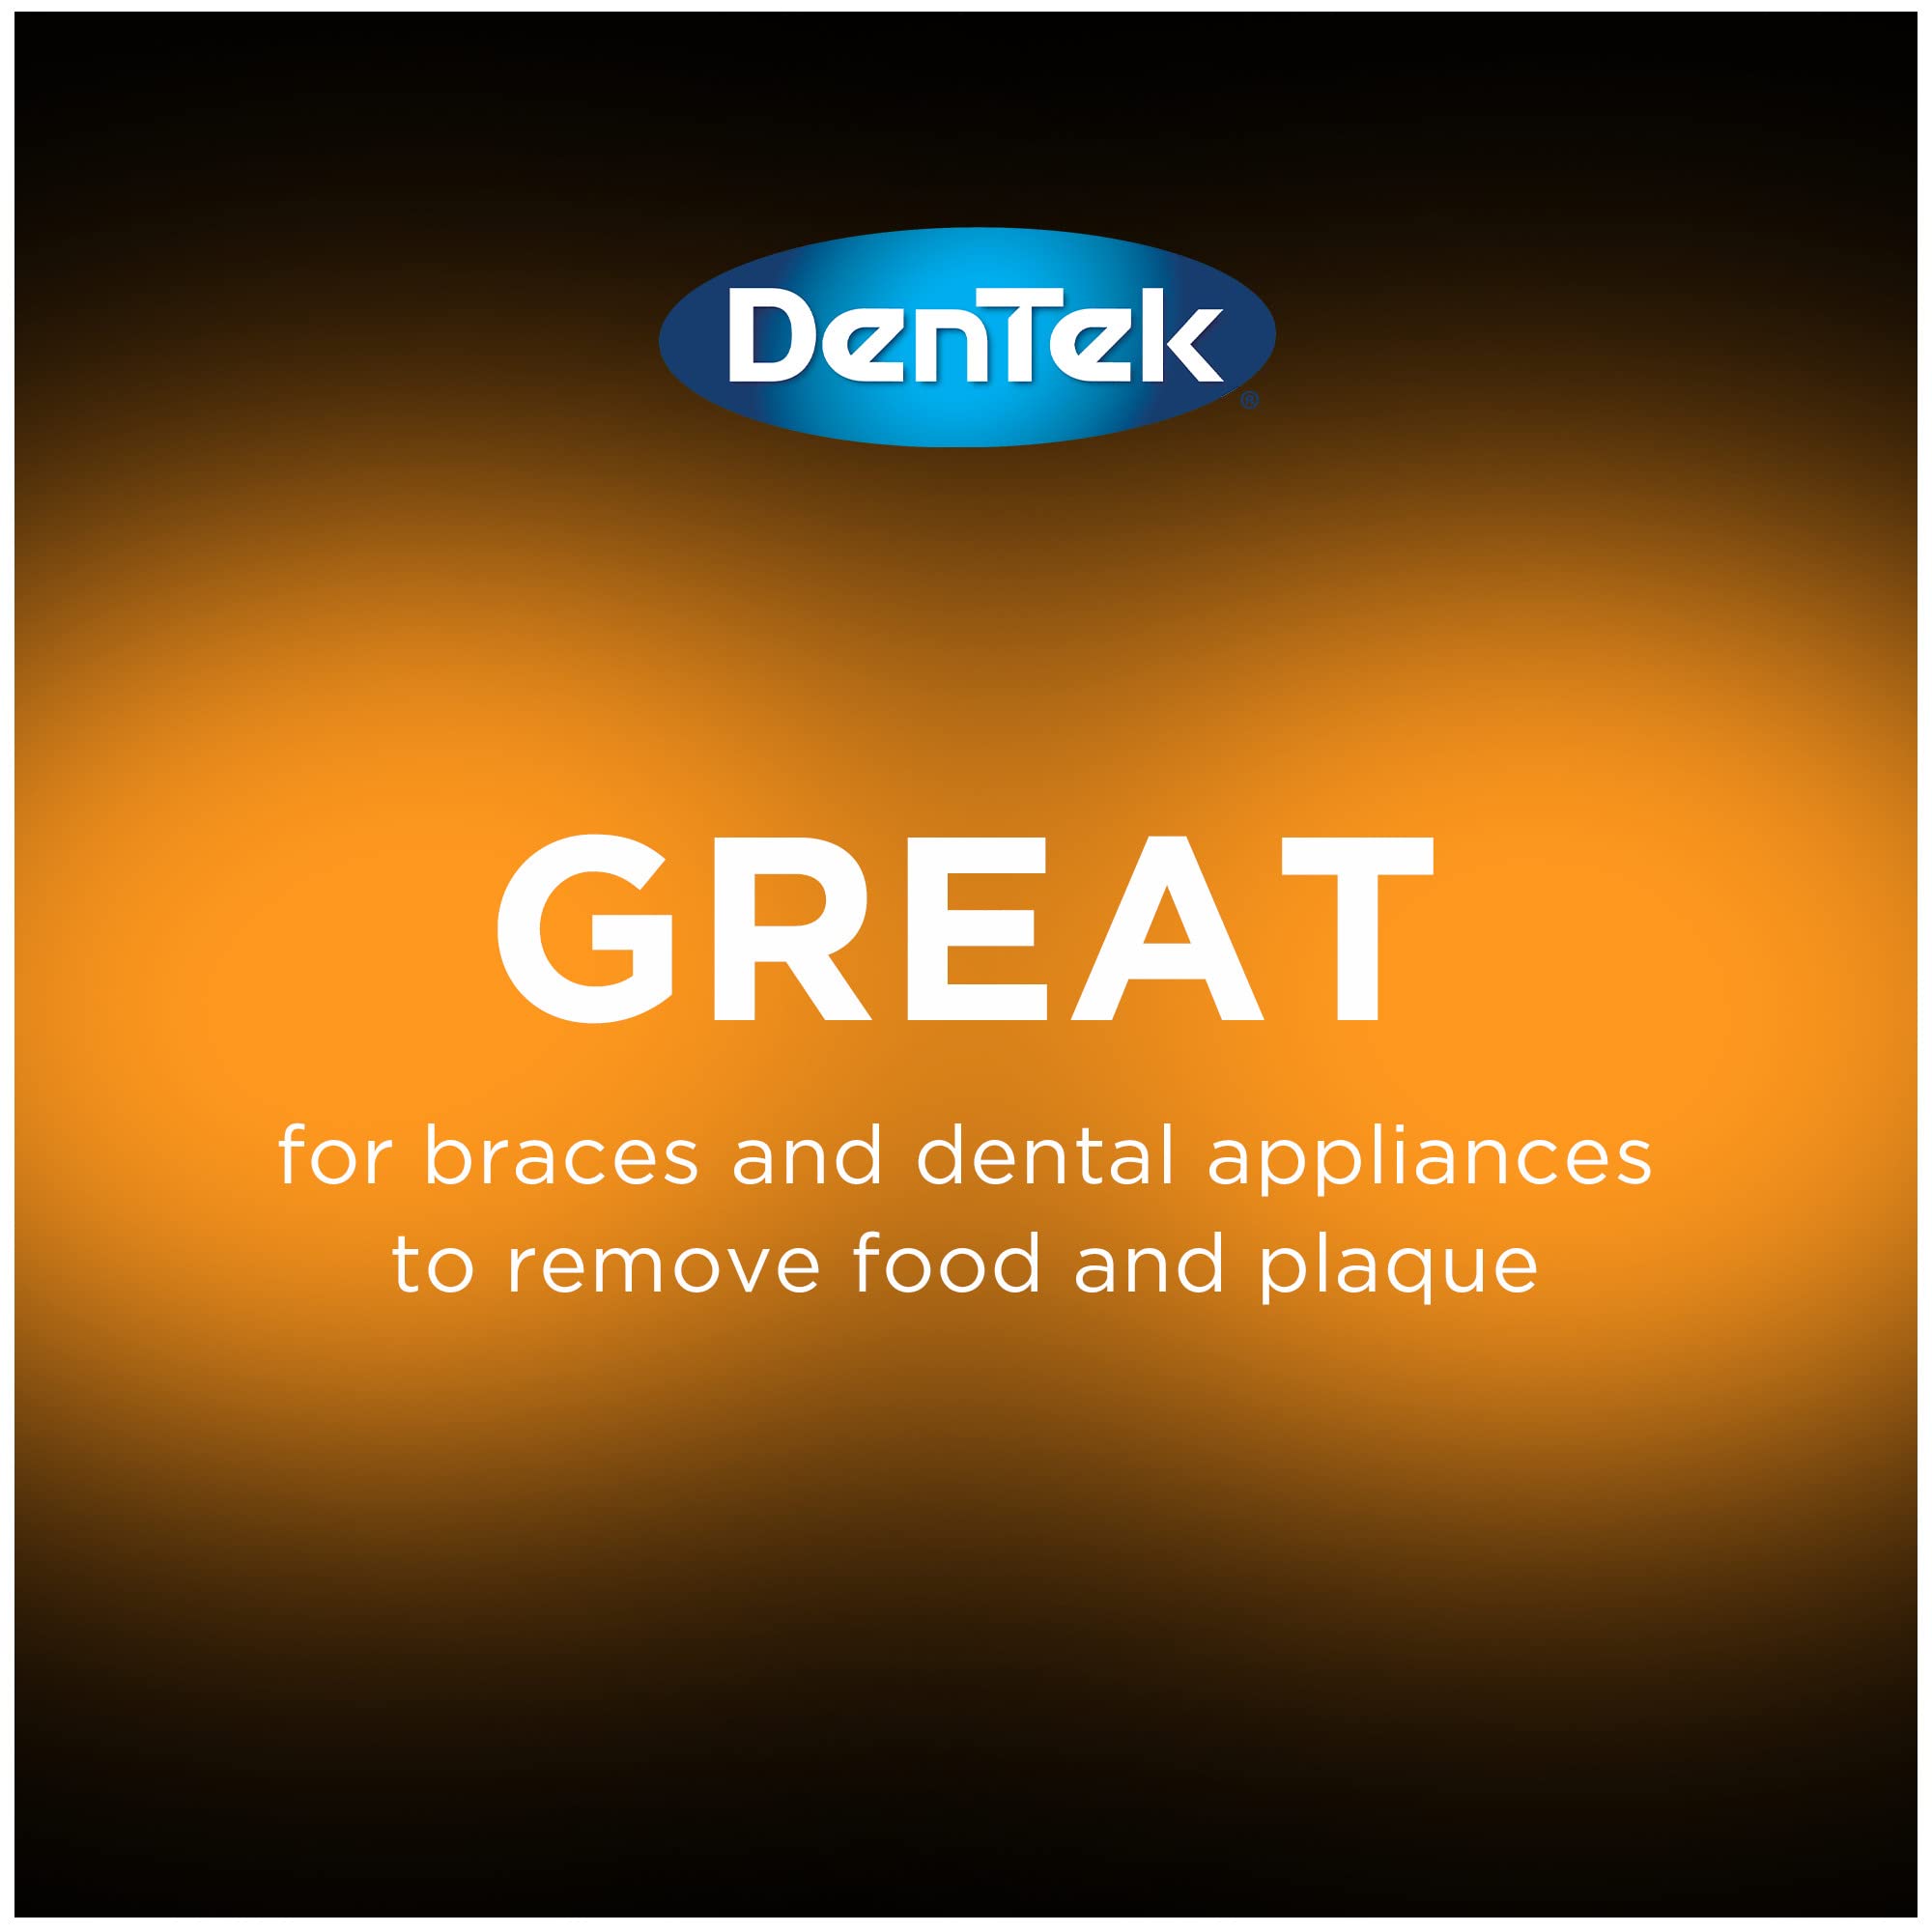 DenTek Slim Brush Interdental Cleaners | Brushes Between Teeth | Extra Tight Teeth | Mint Flavor | 32 Count | Pack of 3